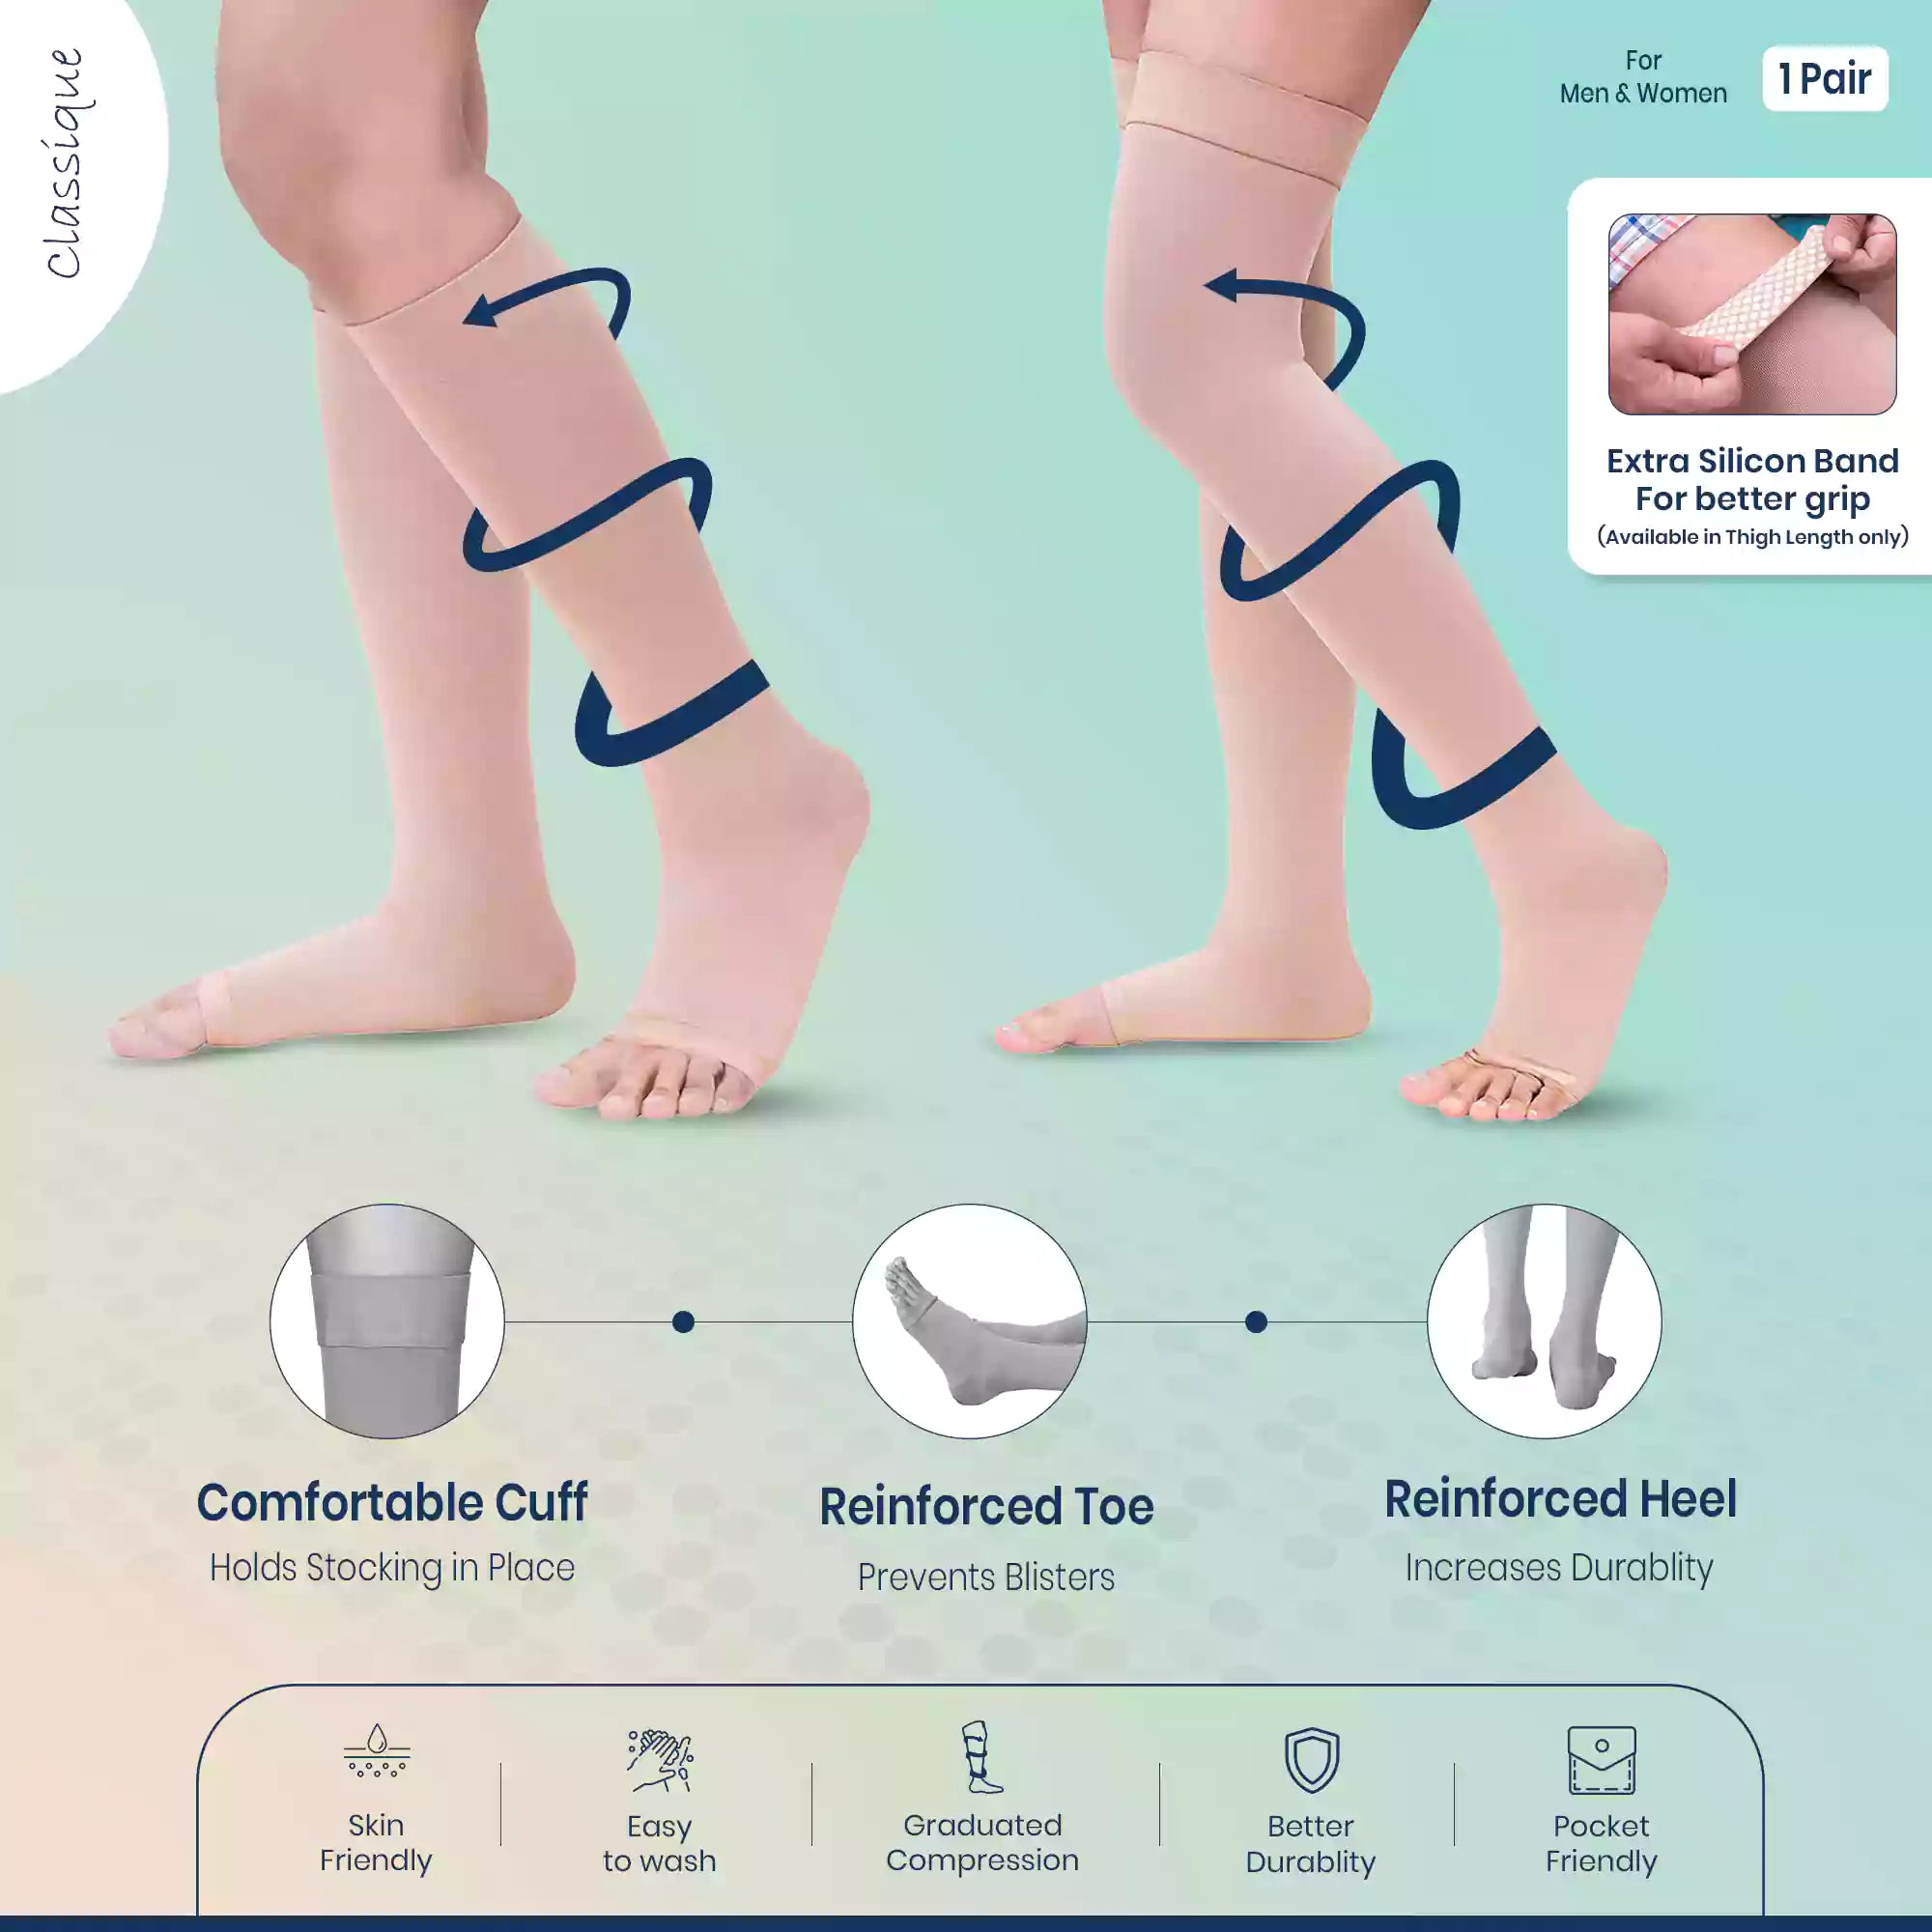 Sorgen® Classique Compression Stockings Class I- Knee/Thigh Length